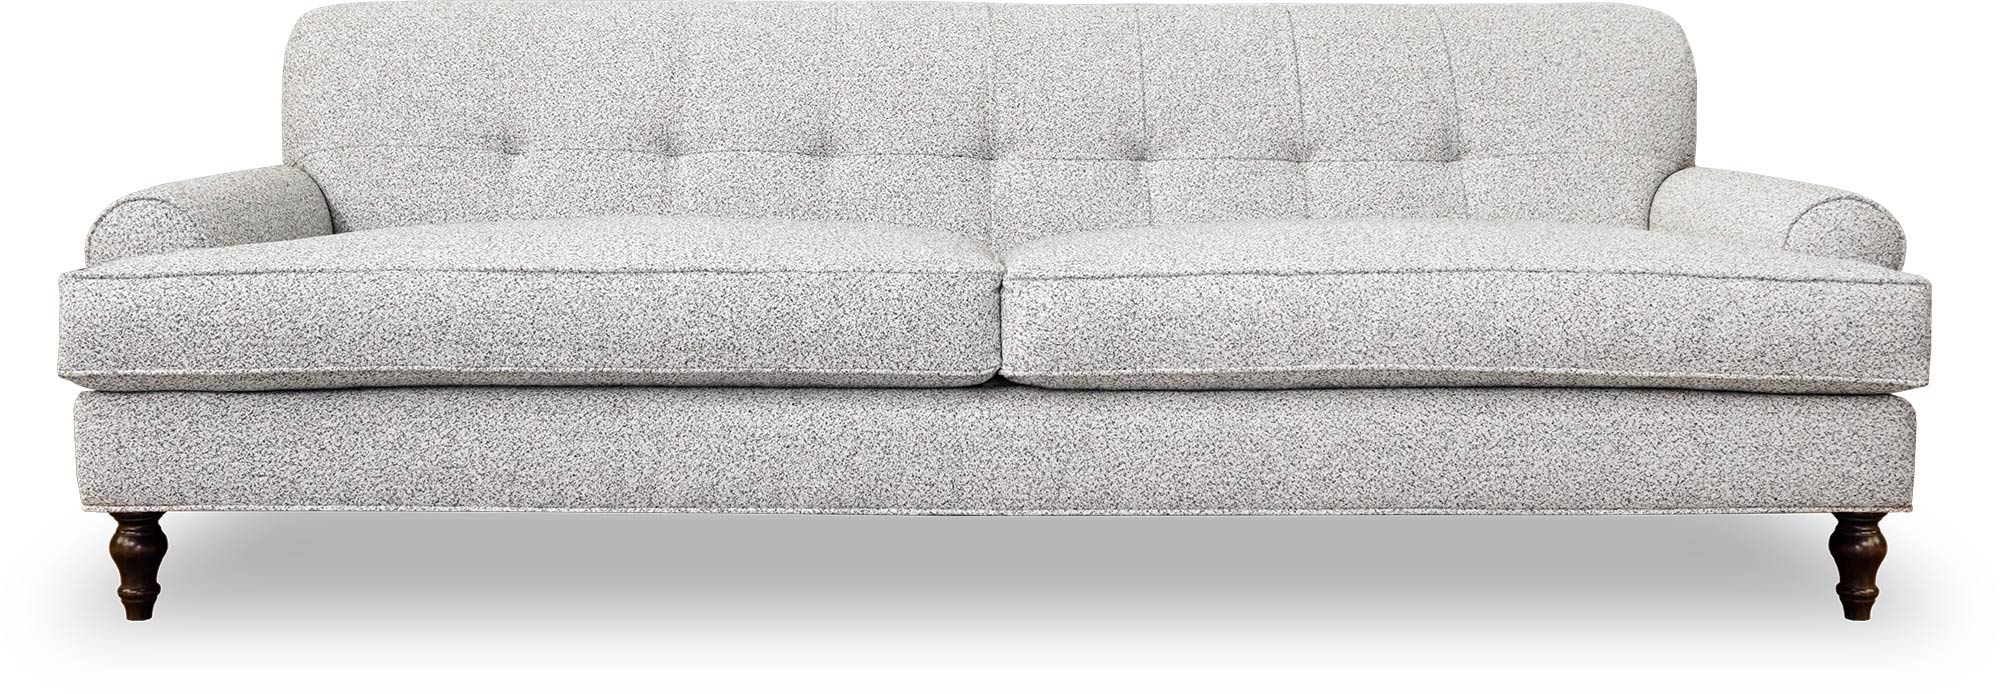 98 Puddin sofa in Cortlandt Dalmation